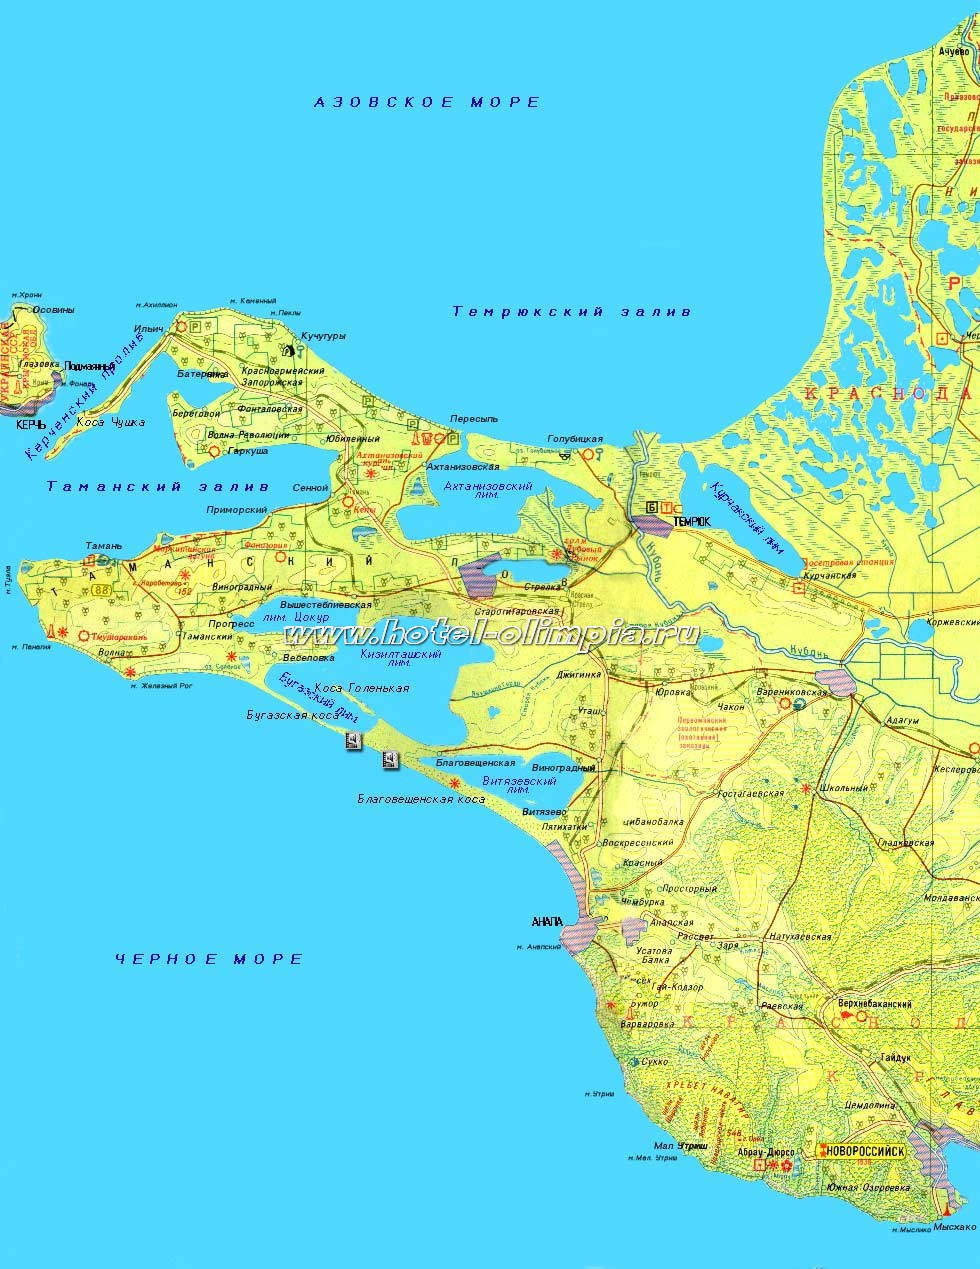 Покажи карту тамани. Тамань на карте Краснодарского края. Станица Тамань, Темрюкский район, Краснодарский край. Полуостров Тамань на карте. Полуостров Тамань на карте Краснодарского края.